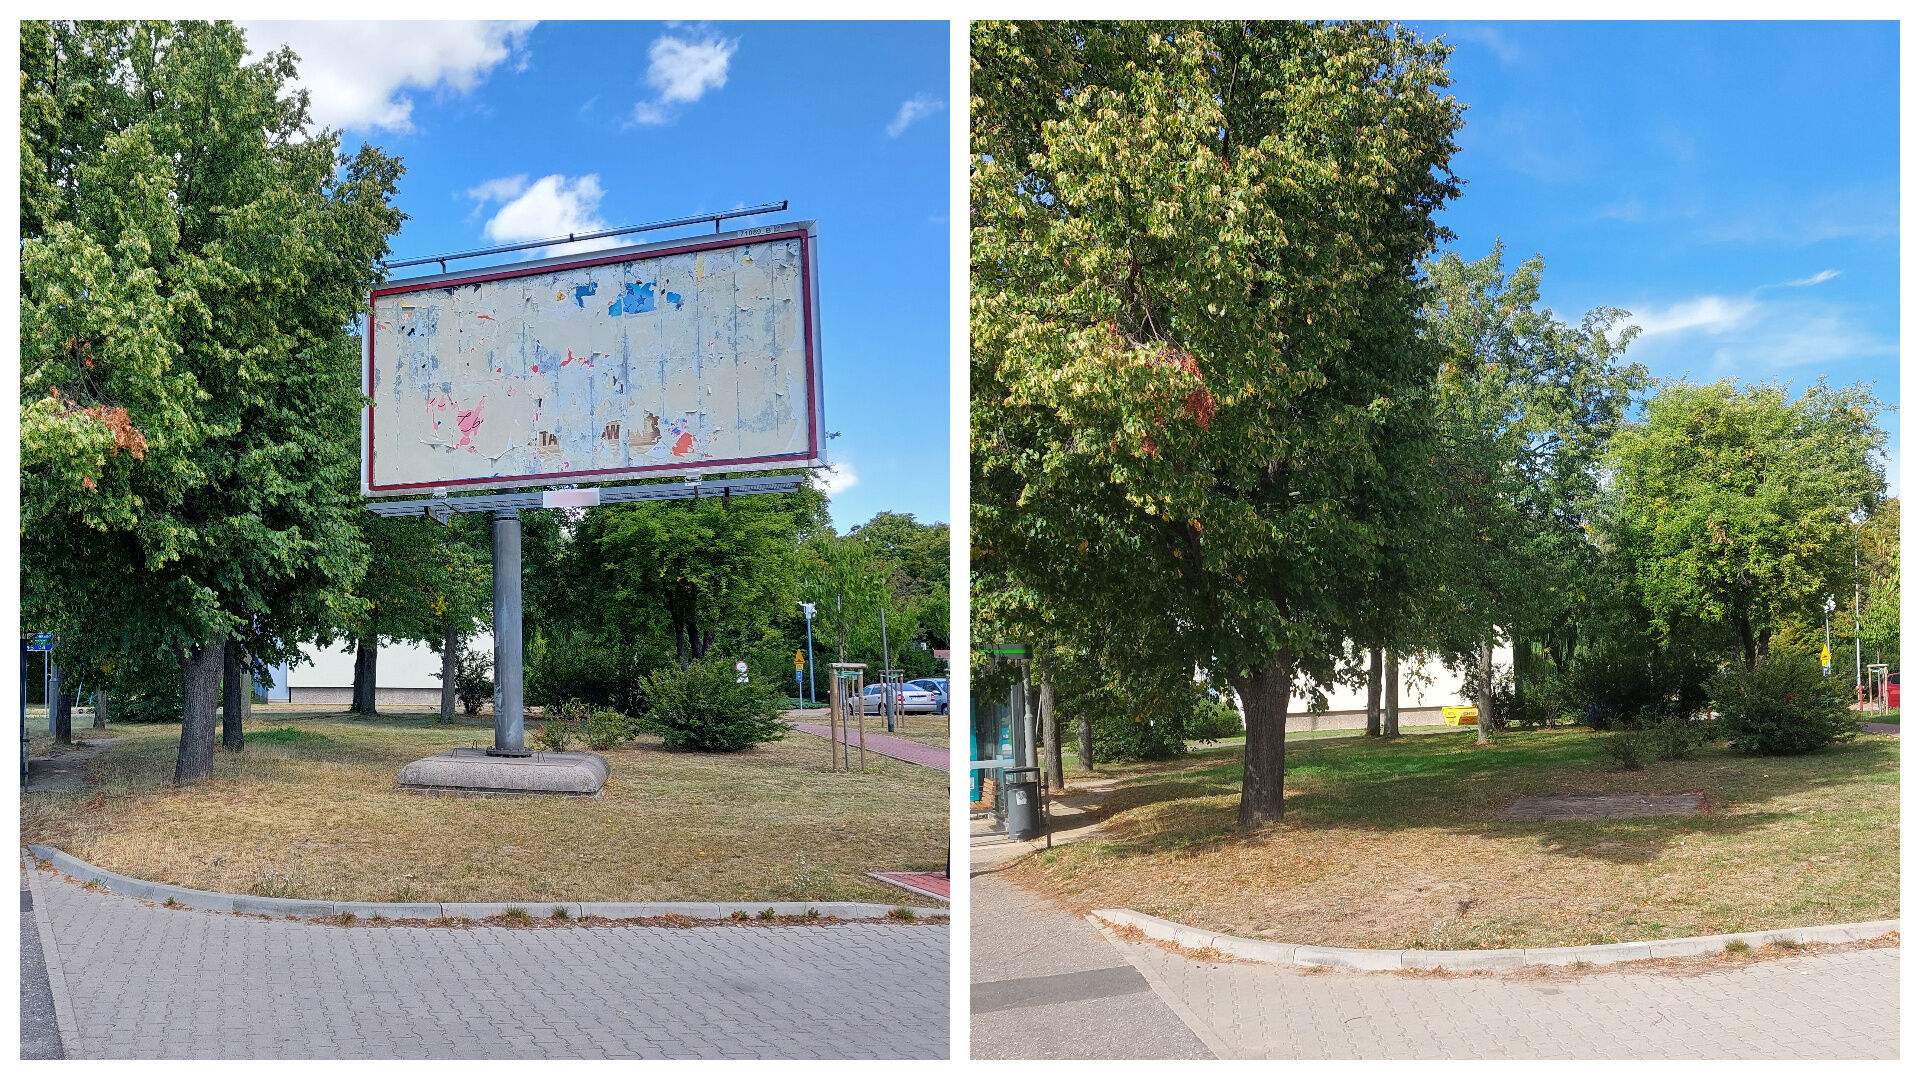 Kolaż zdjęć: po lewej stronie widać fragment ulicy i trawnik, na którym stoi wielkoformatowa reklama. Po prawej widać ten sam kadr, jednak bez nośnika reklamy na trawniku. - grafika artykułu